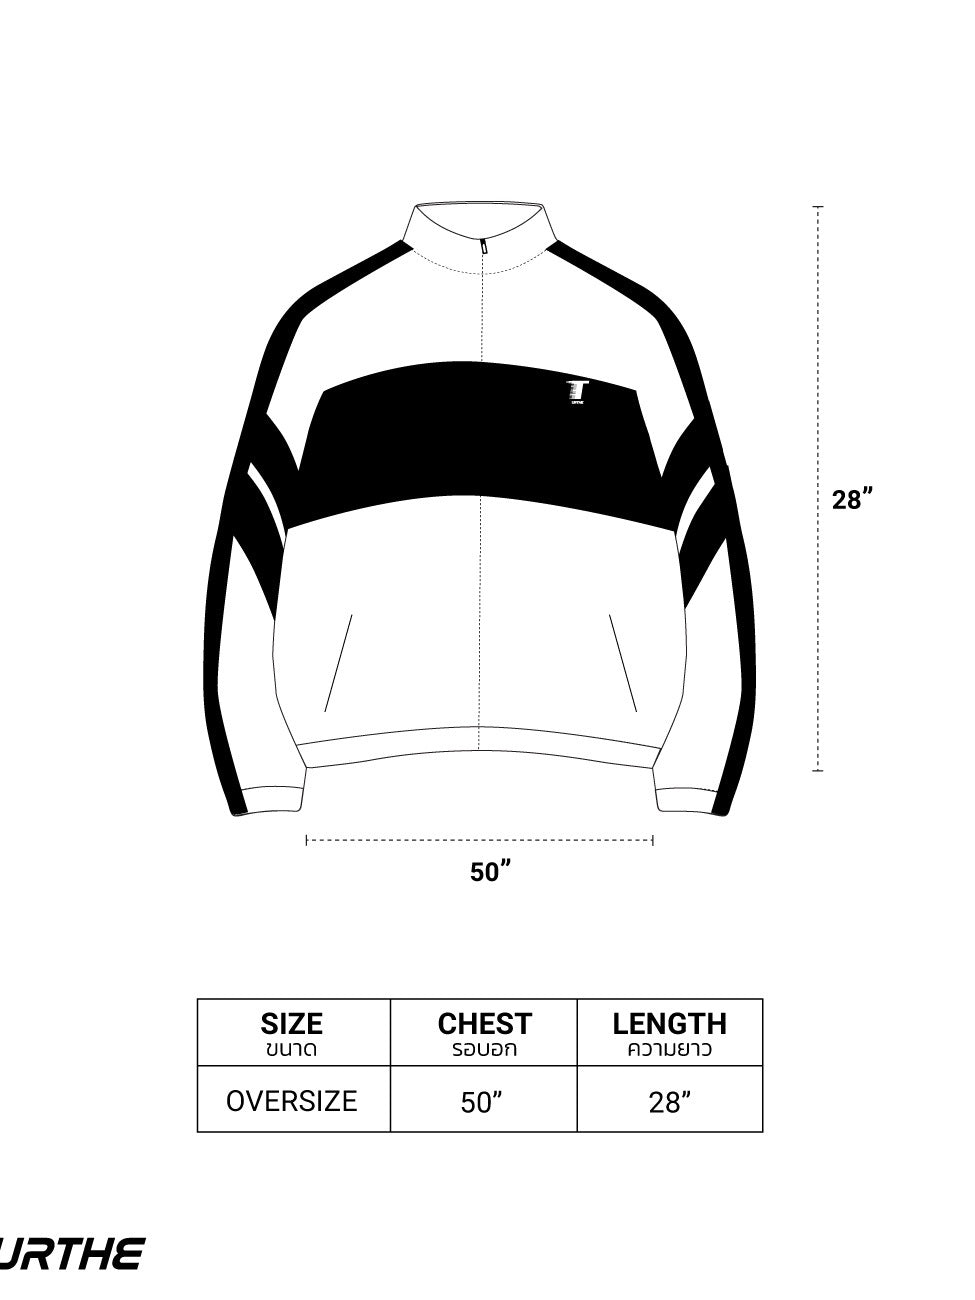 URTHE - เซ็ตเสื้อแจ็คเก็ตหนัง PU แขนยาว สกรีนลาย รุ่น THE RACE JACKET SET